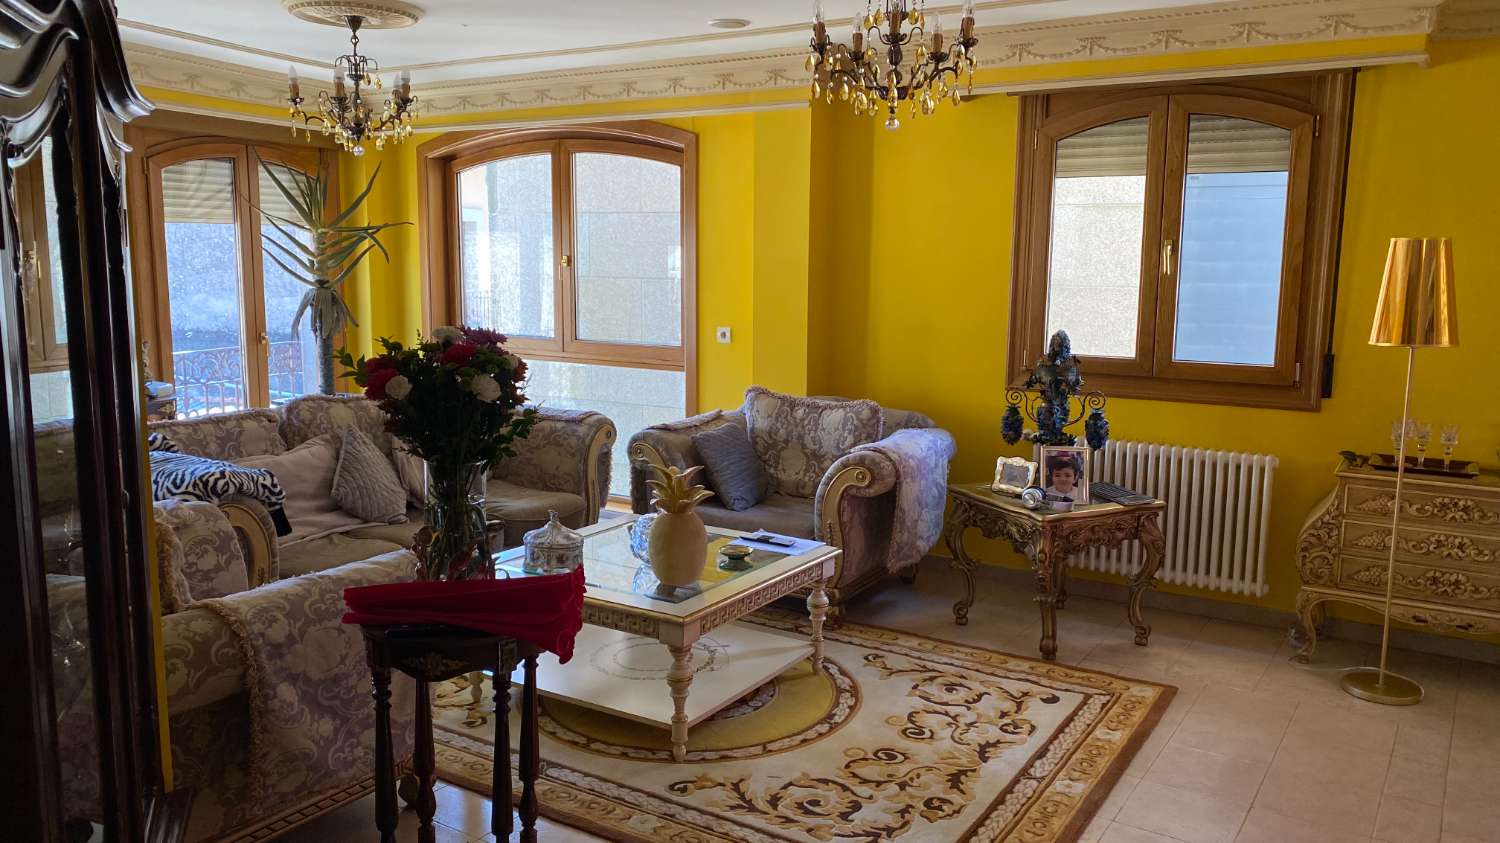 Vilagarcia: we sell villa, excellent location...